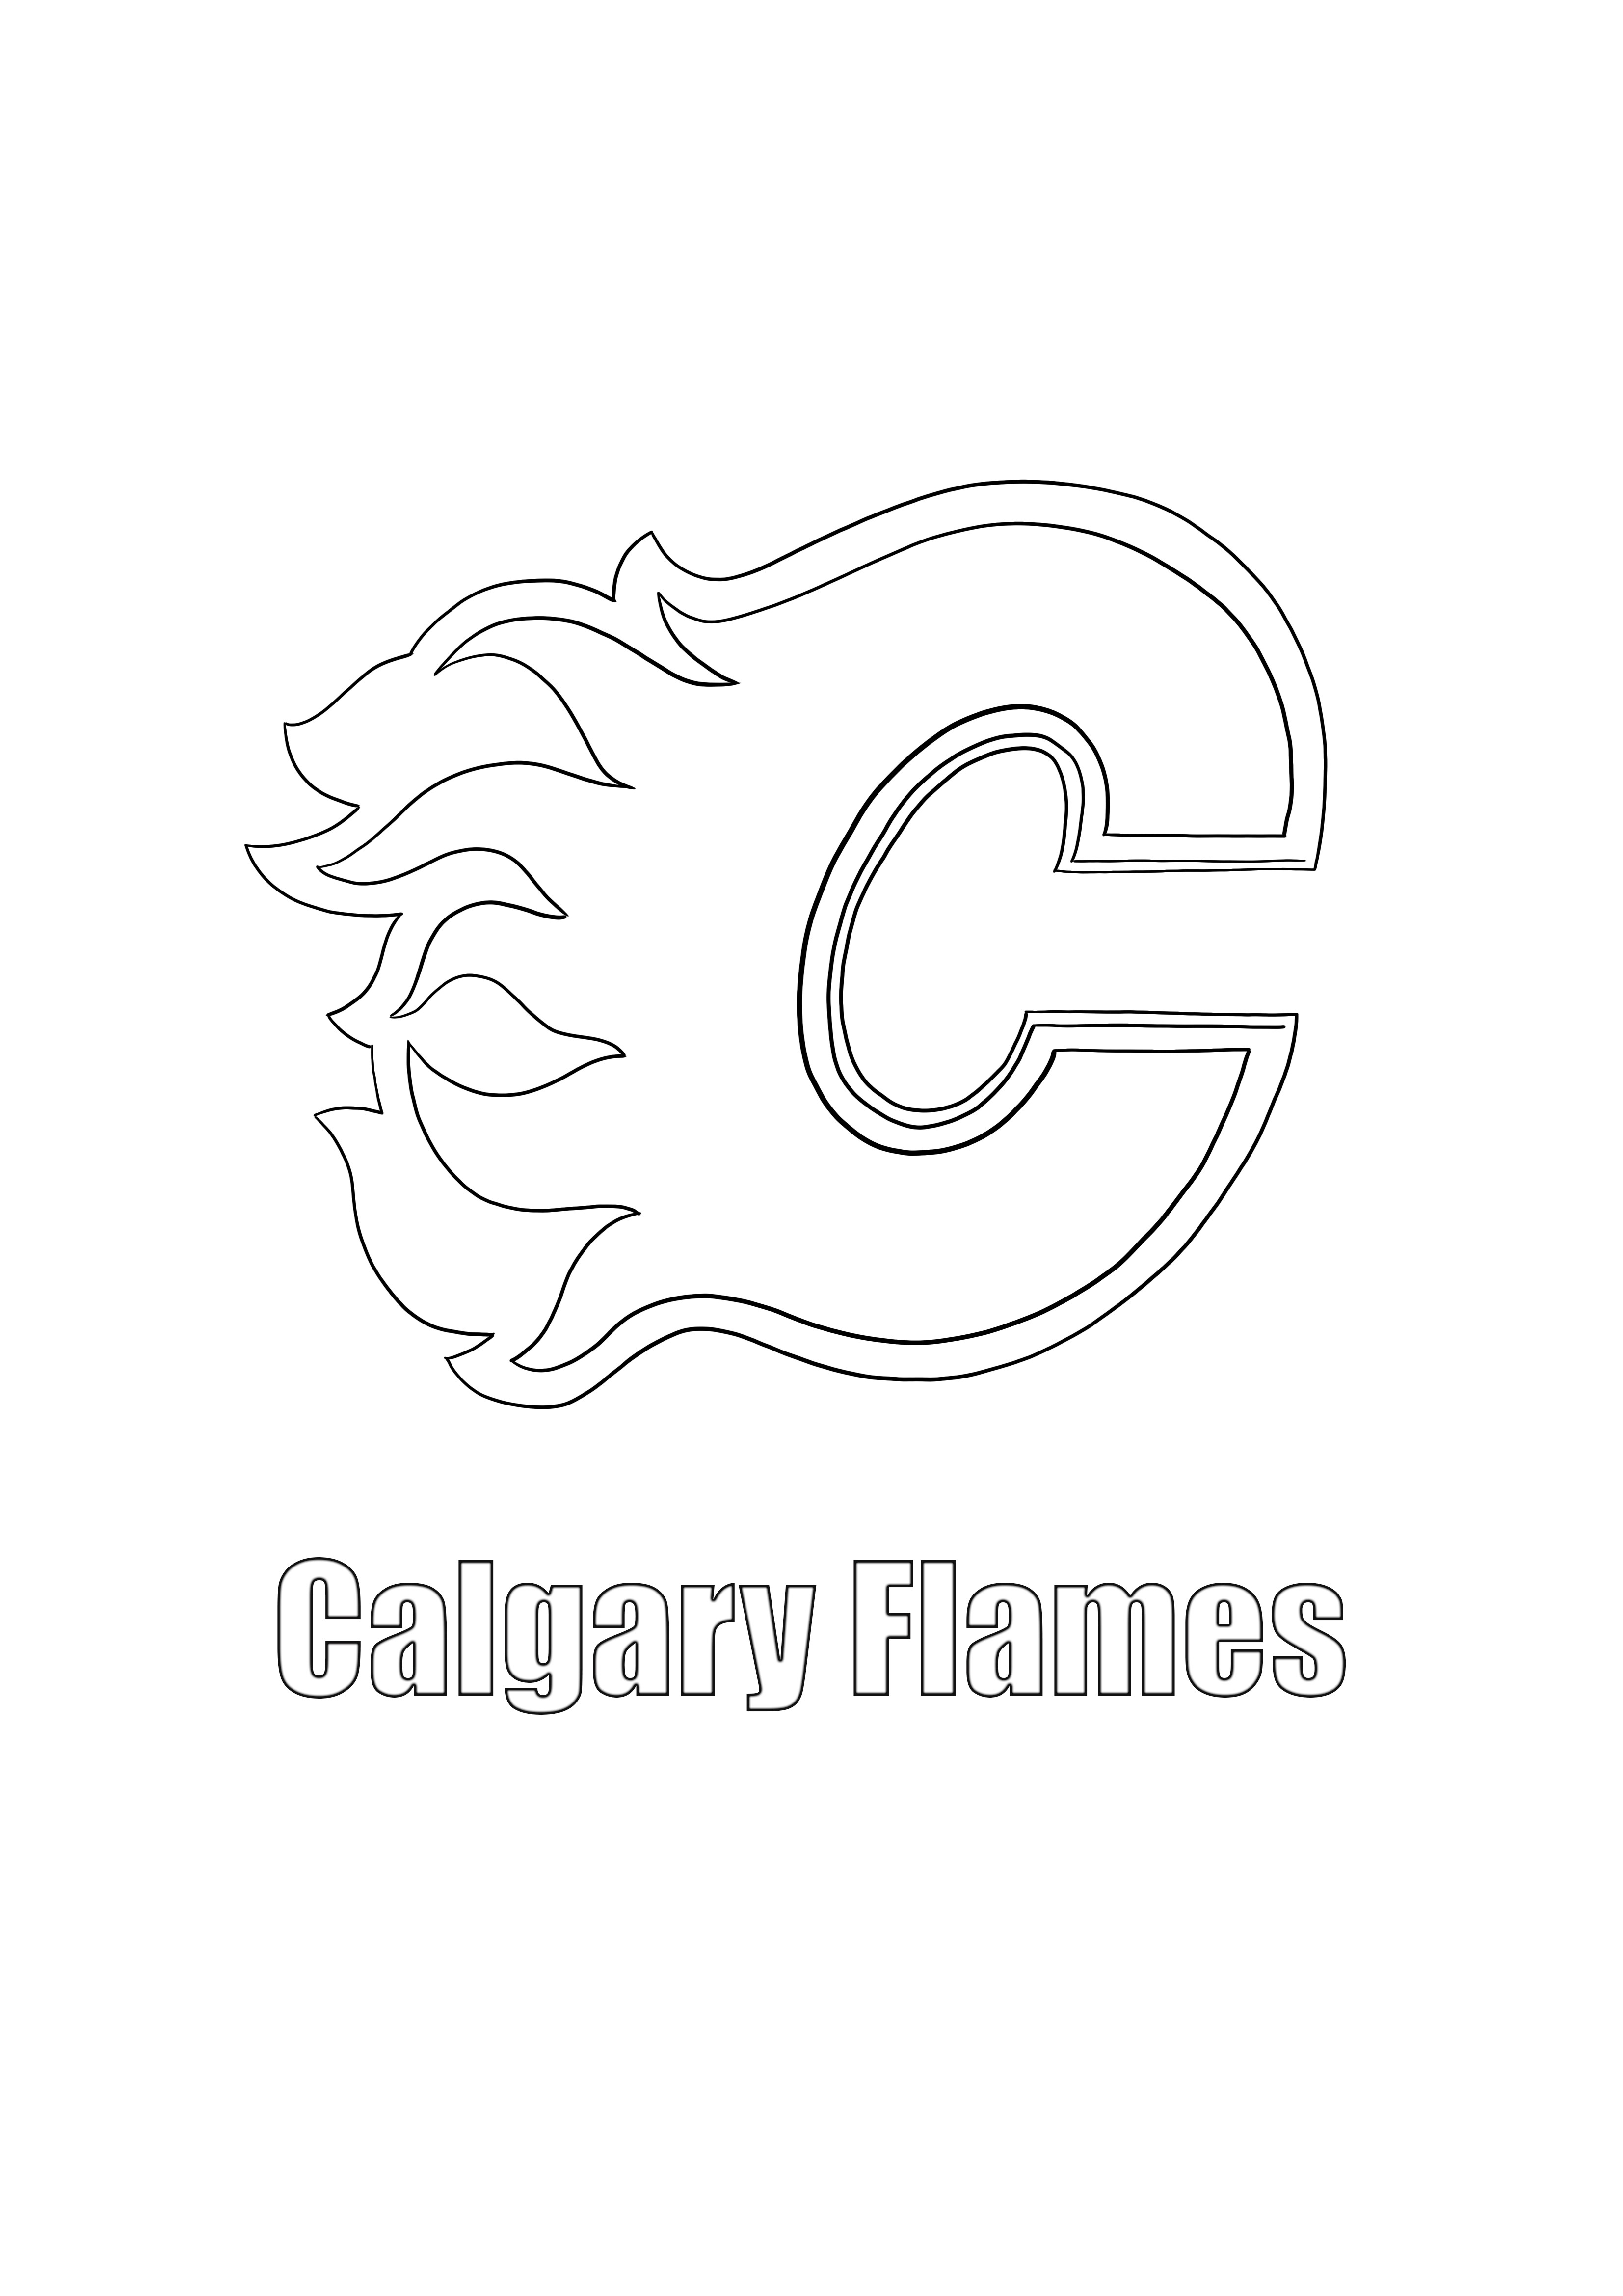 Ücretsiz yazdırmak ve renklendirmek için Calgary Flames logosu